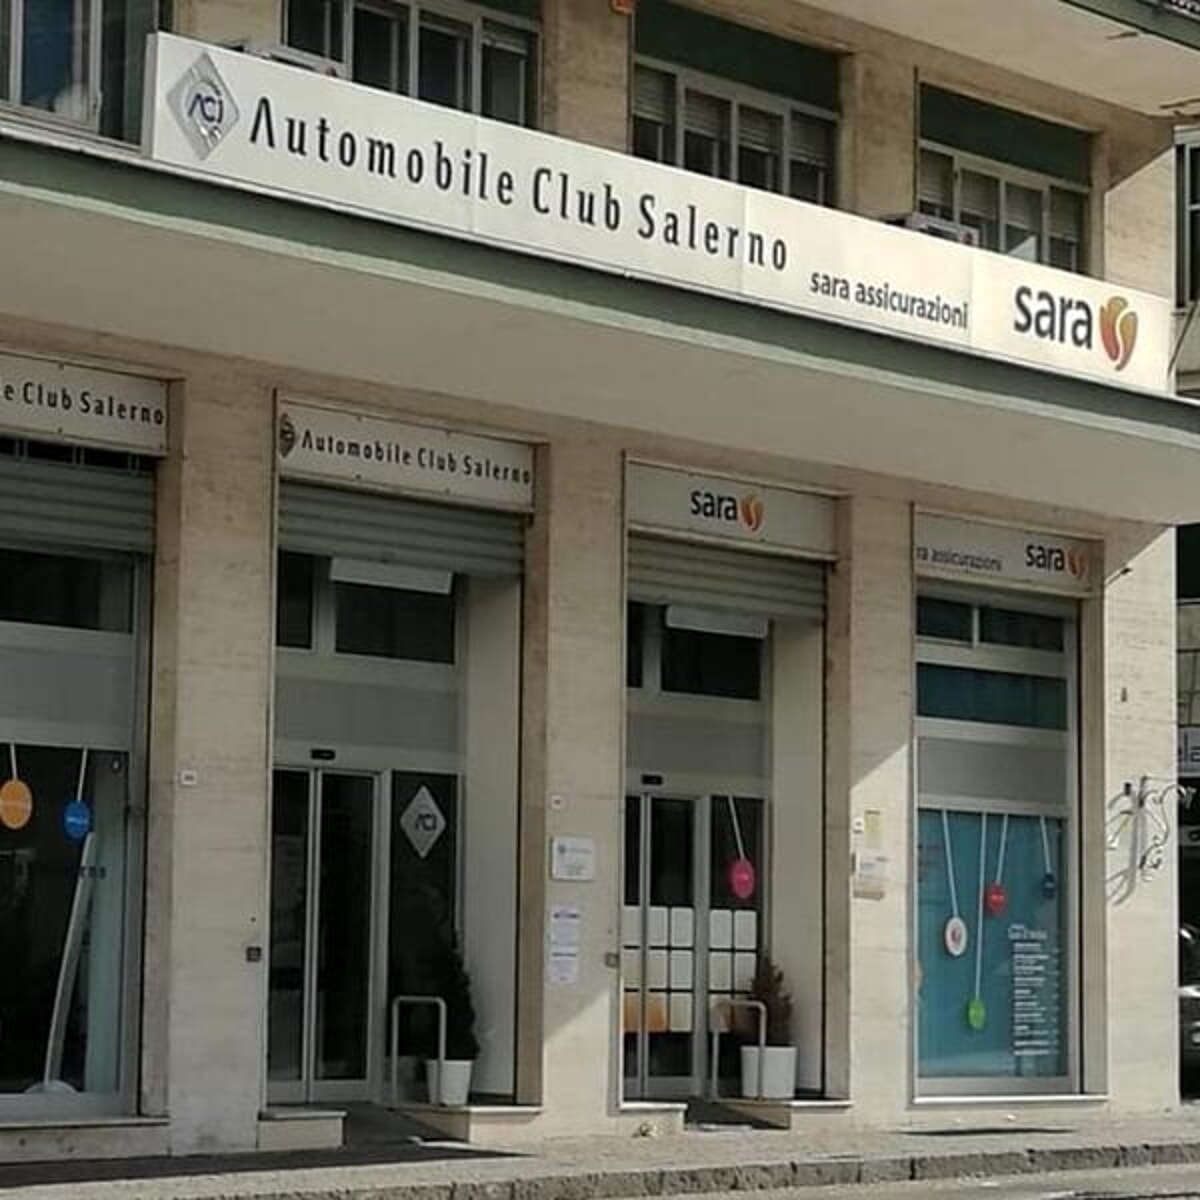 Sconcerto a Salerno: rubato il defibrillatore salva-vita in Corso Garibaldi